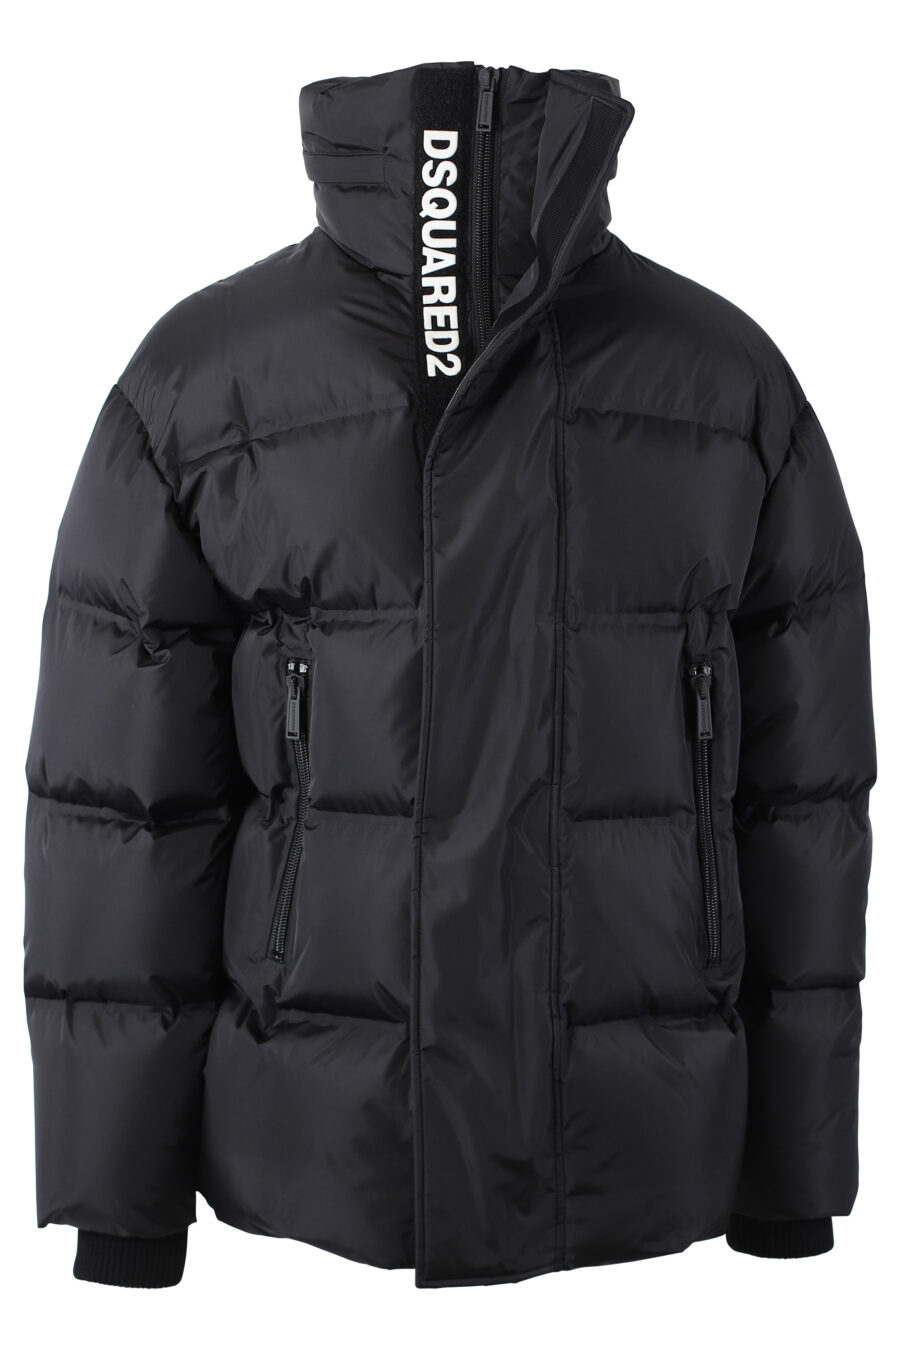 Black jacket with "dsq2" maxilogo on velcro - IMG 1097